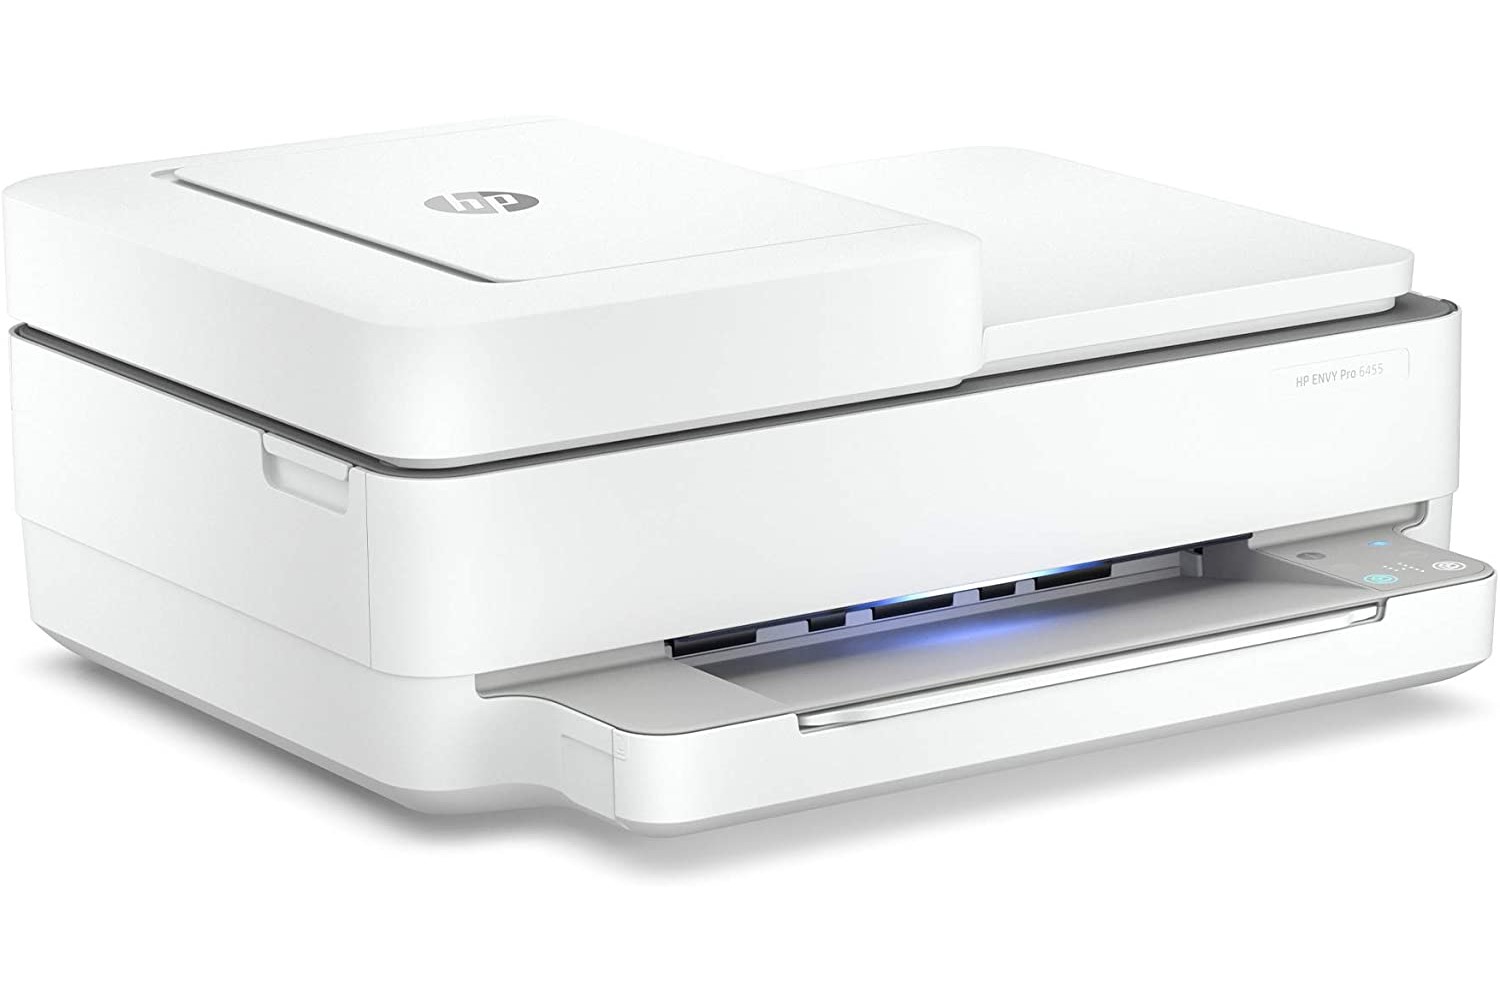 چاپگر چندکاره HP Envy 6455e در حالت آماده به کار، در پس زمینه سفید.